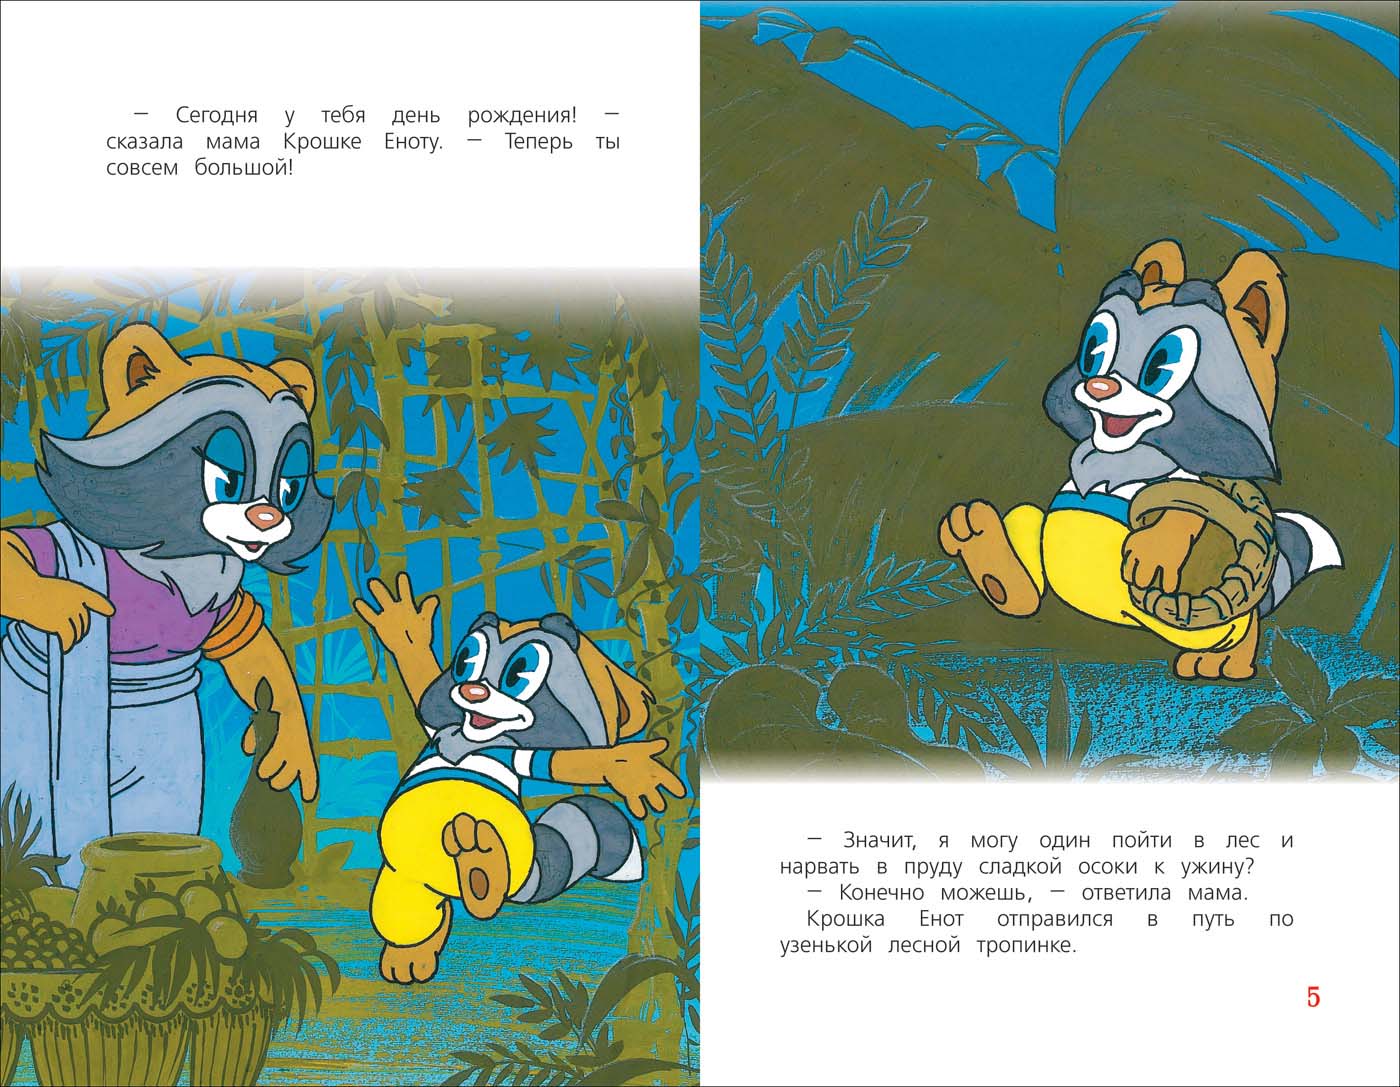 Книга из серии Детская библиотека Росмэн - Сказки-мультфильмы. Крошка Енот  